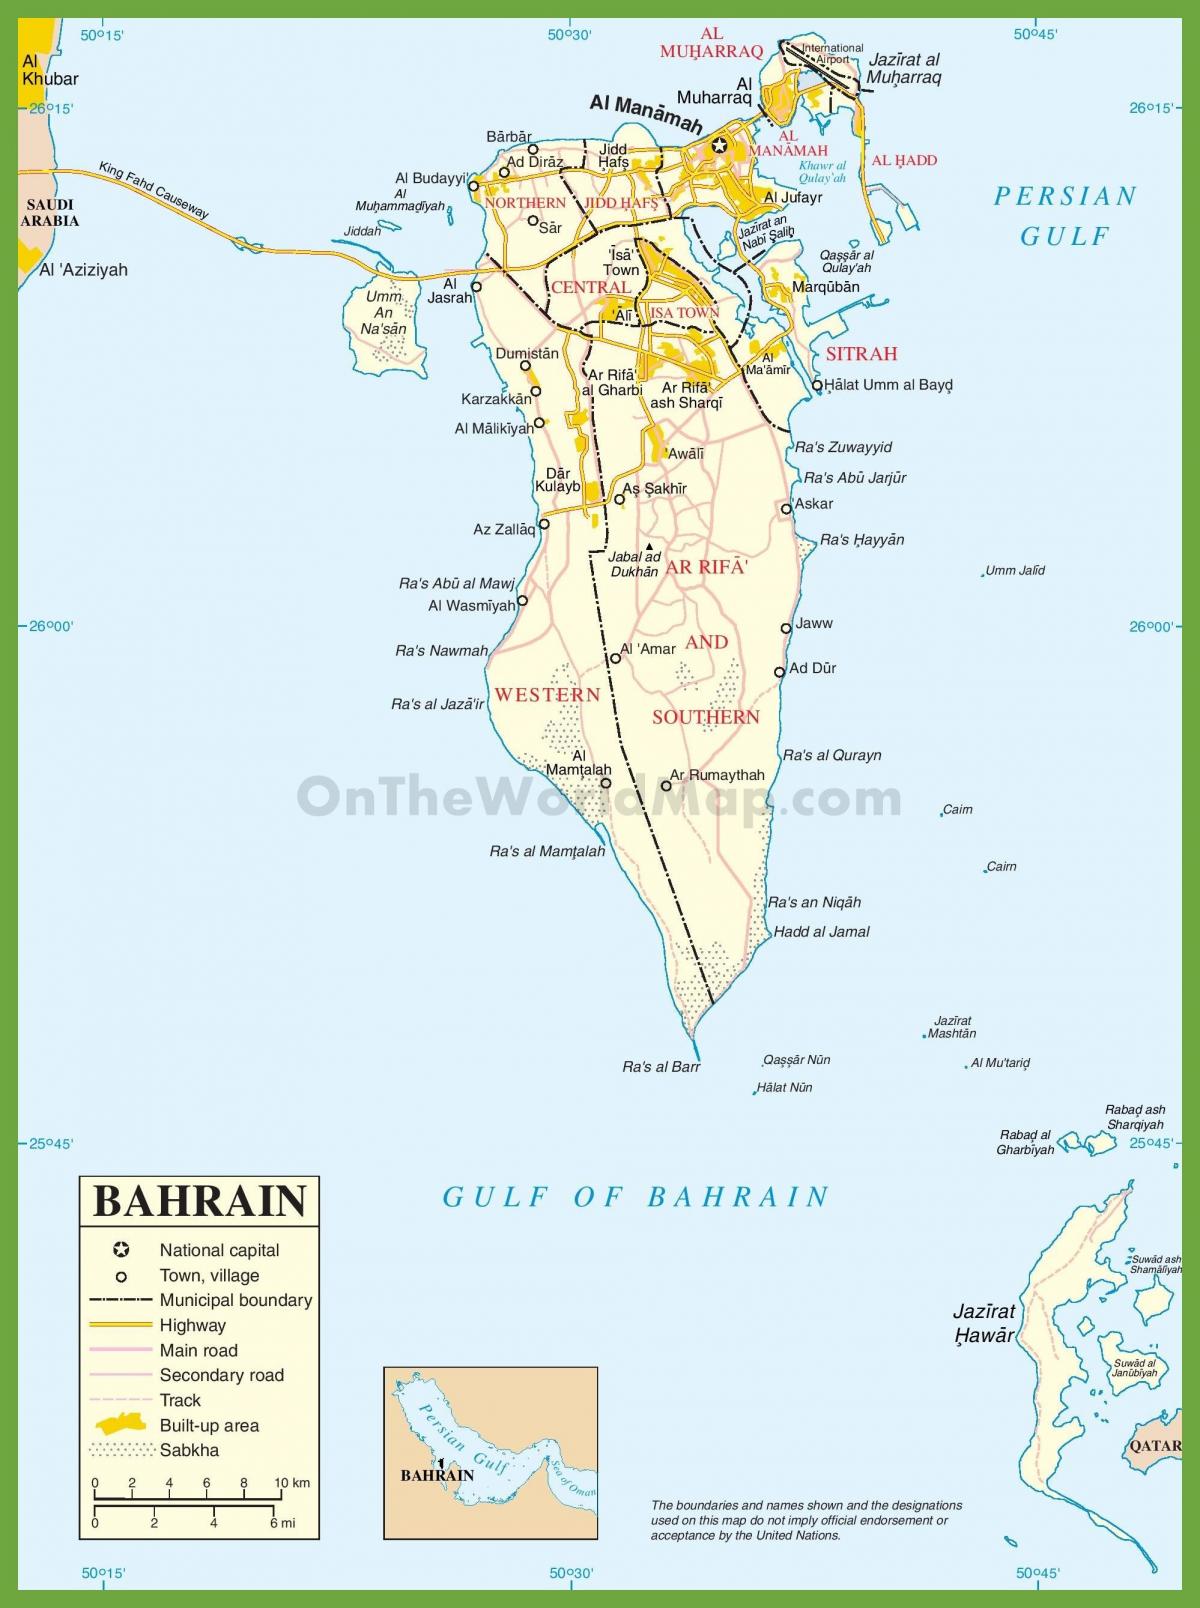 ბაჰრეინის ქალაქებში რუკა